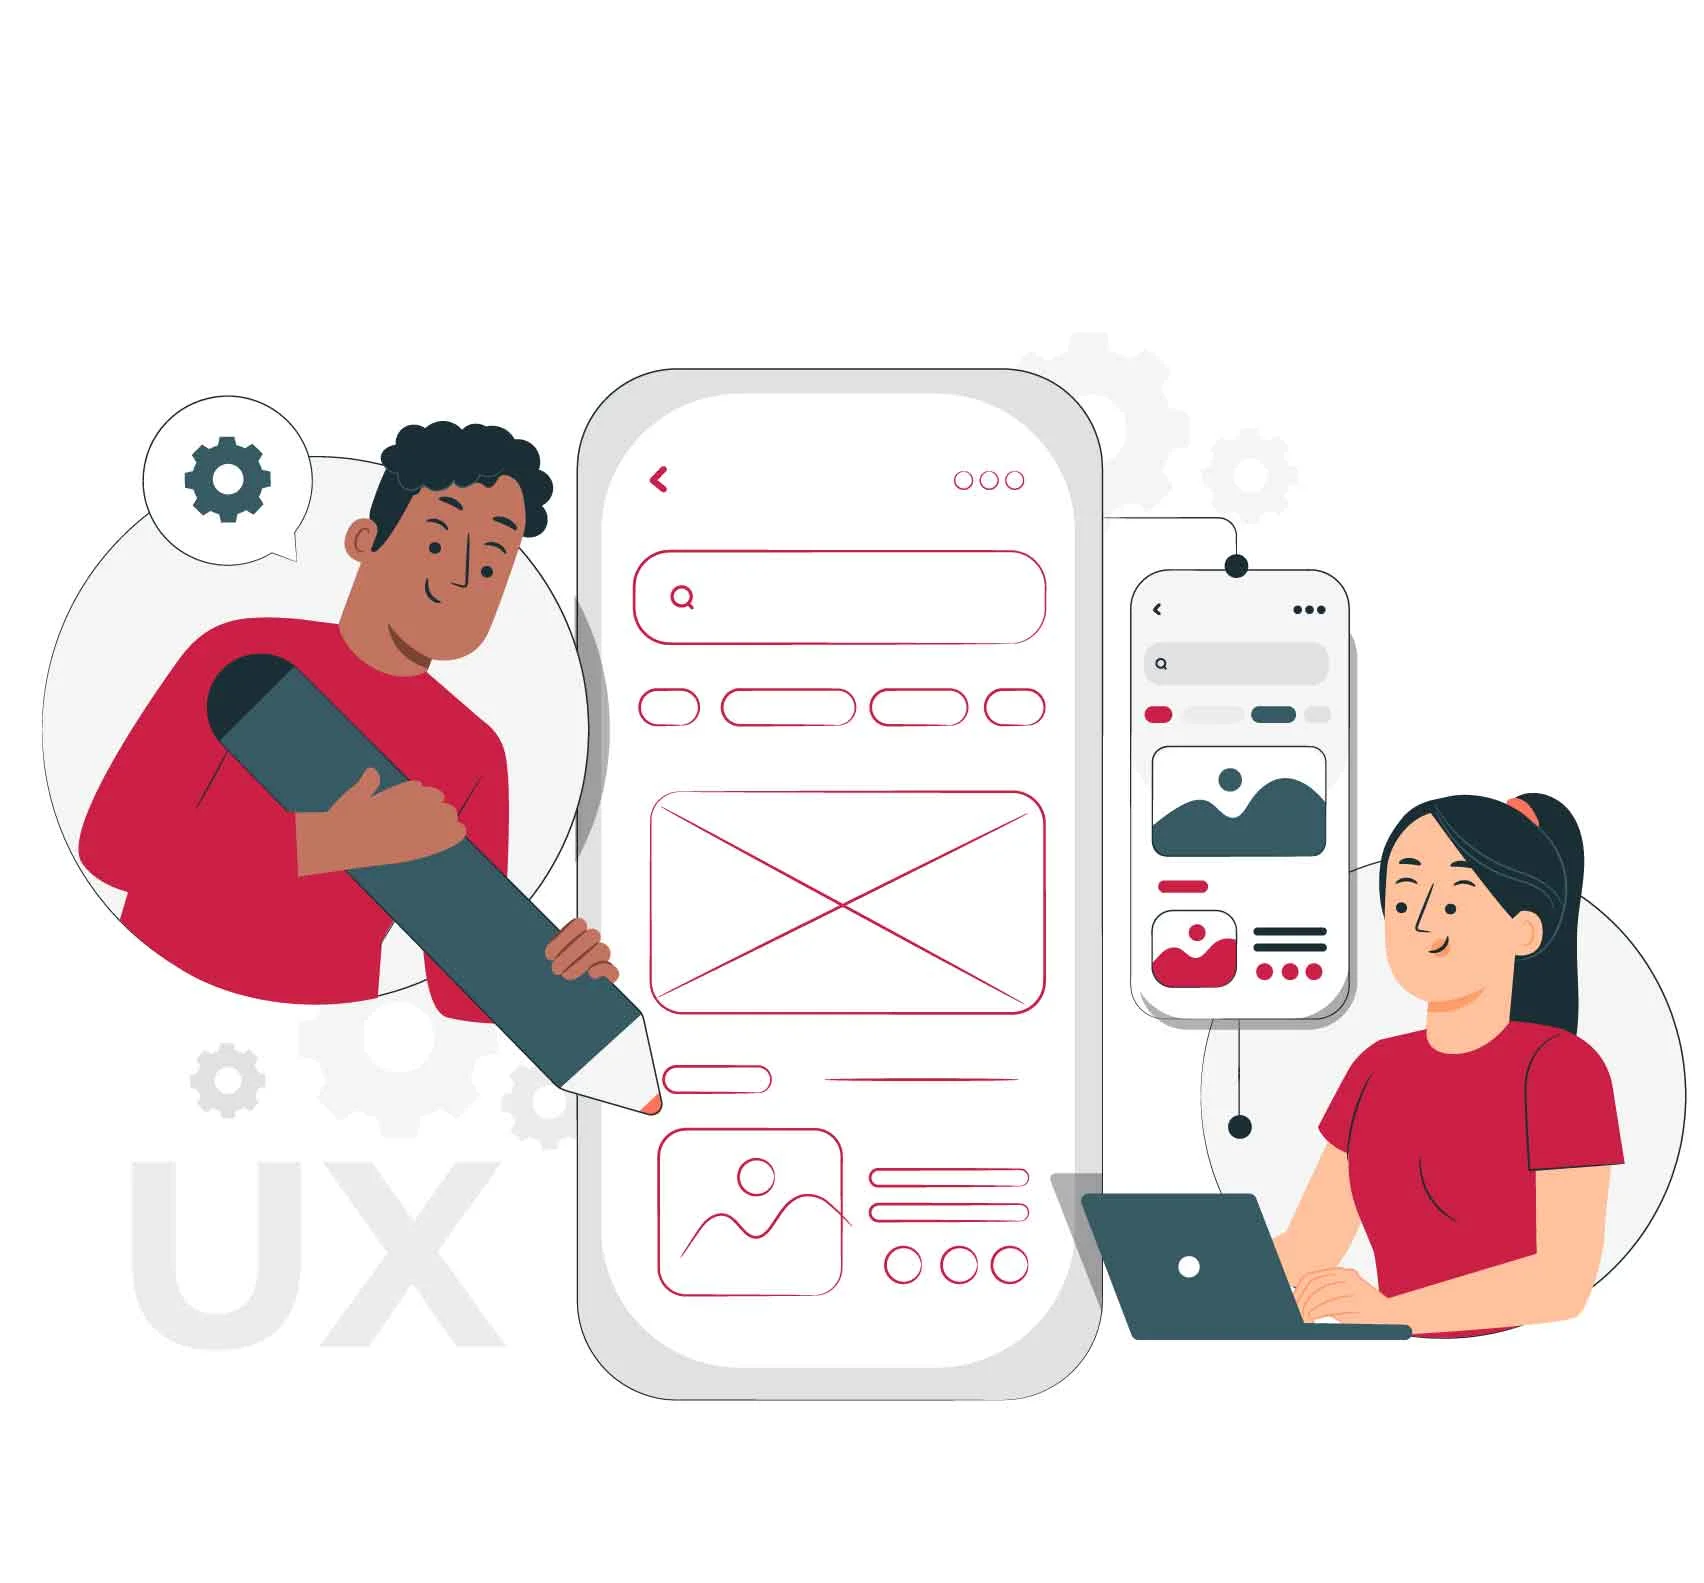  ui/ux design service in india